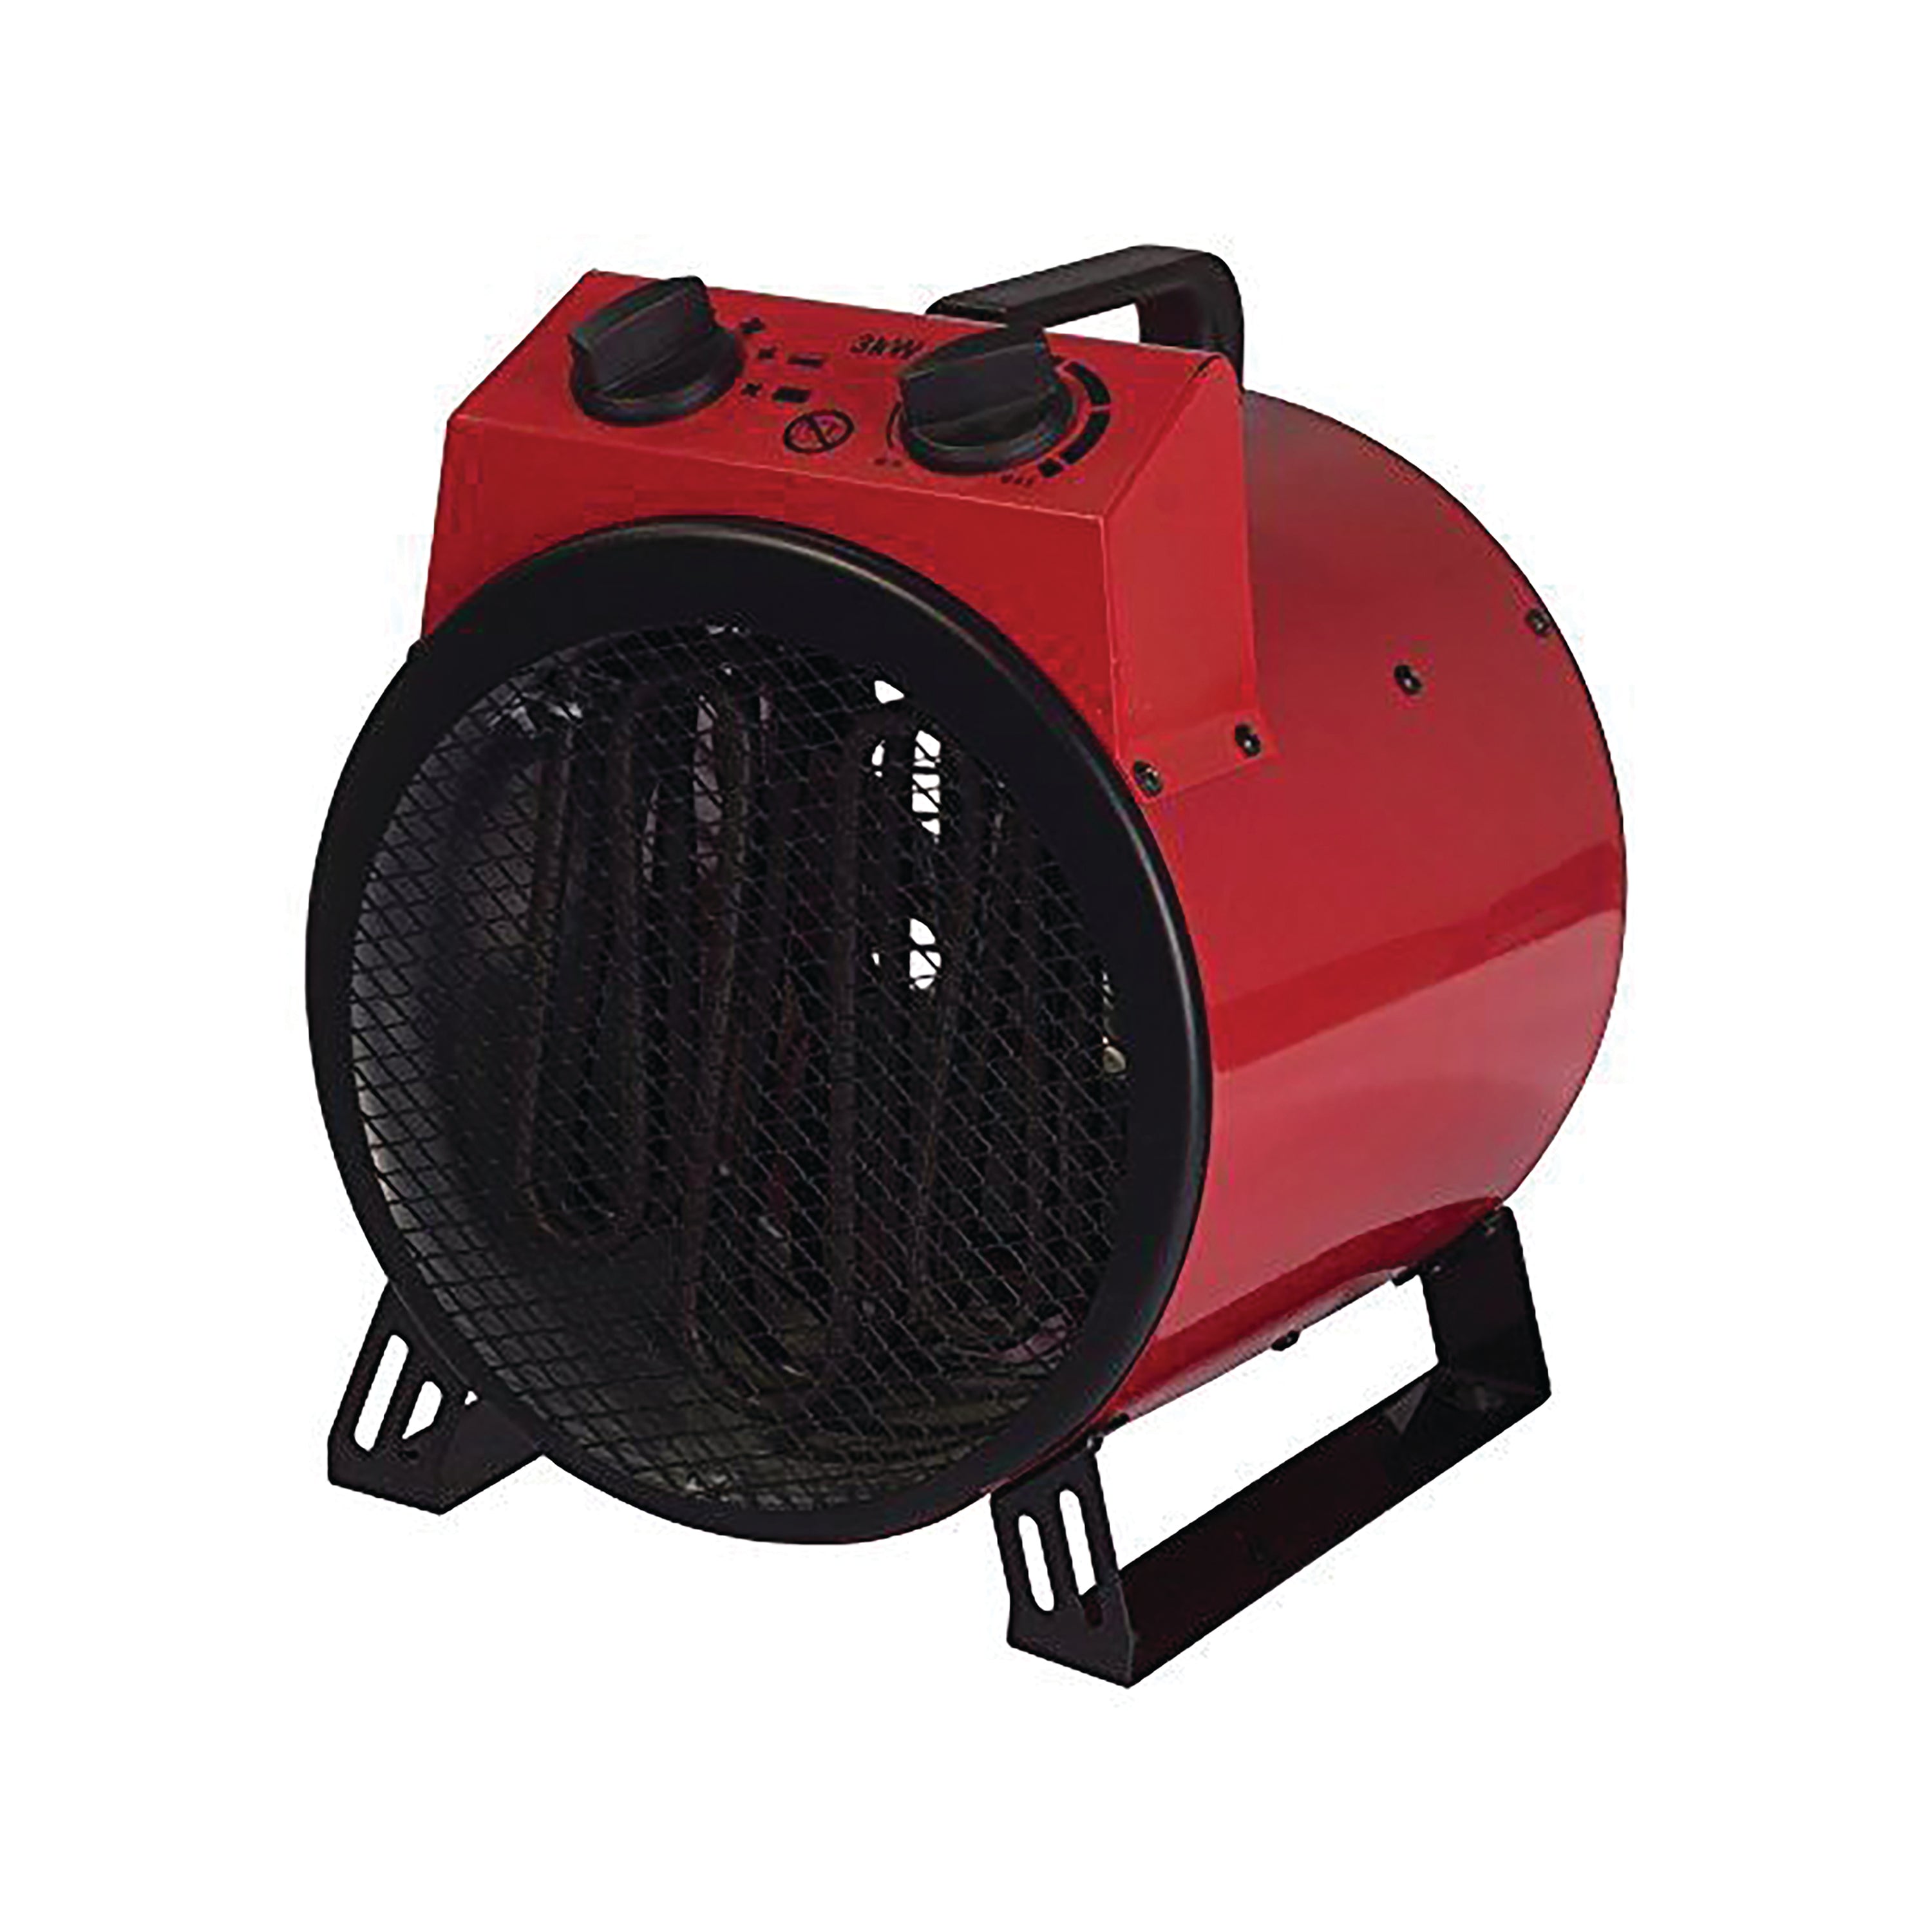 Igenix 3000W Industrial Drum Fan Heater 2 Heat Settings Red IG9301